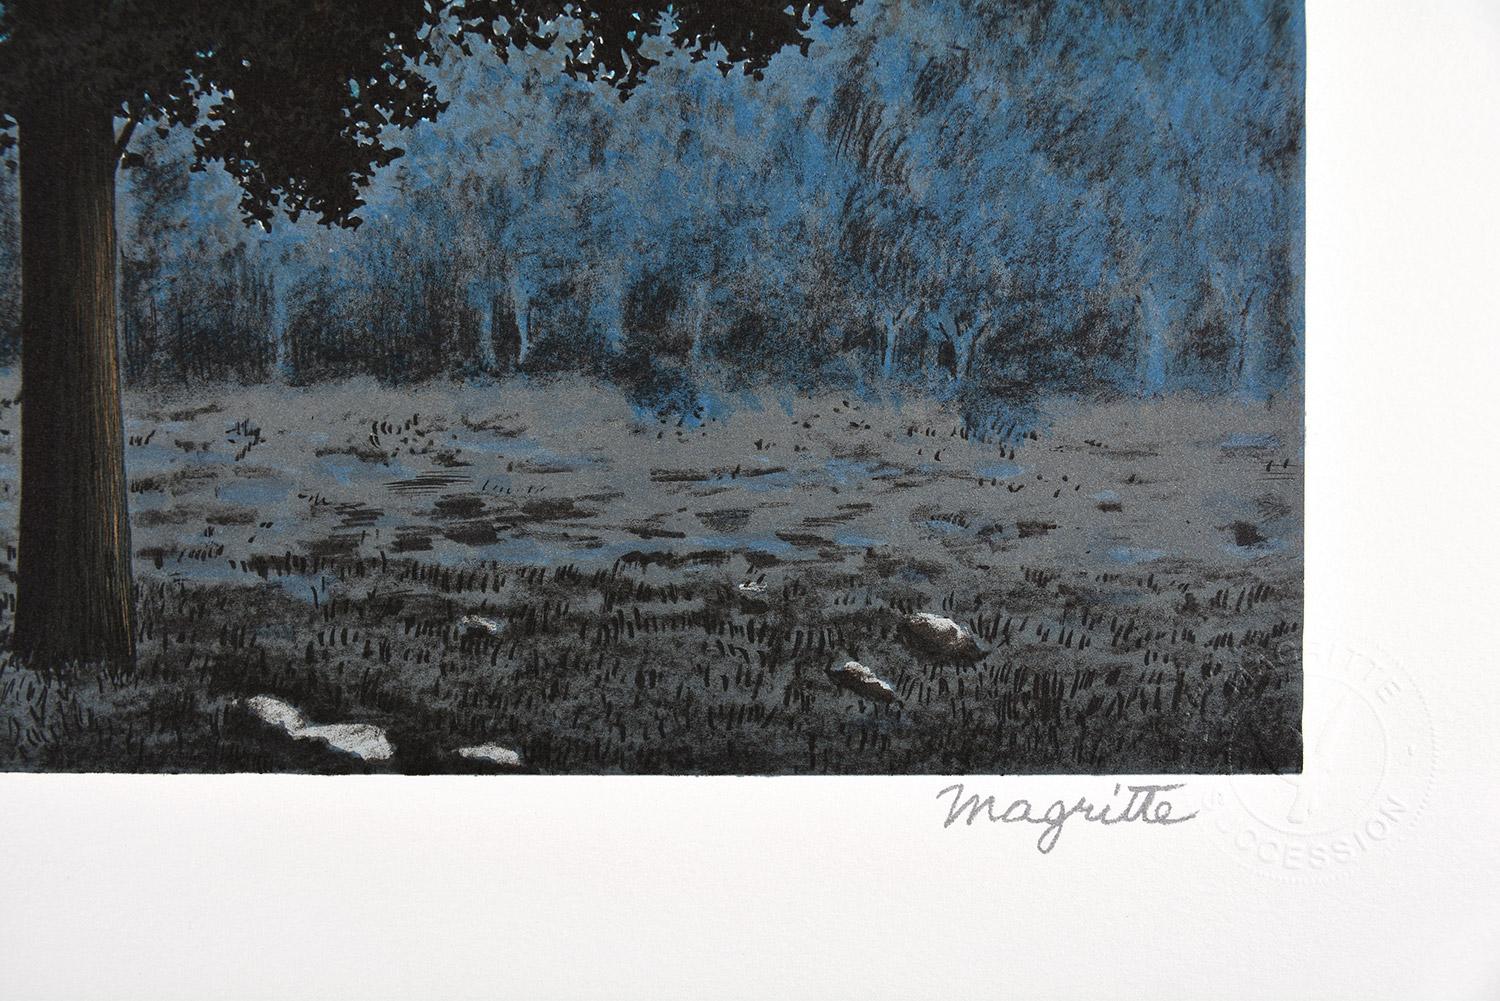 René Magritte - LE SEIZE SEPTEMBRE, 1956
Date de création : 2010
Support : Lithographie sur papier BFK Rives
Numéro d'édition : 147/275
Taille : 60 x 45 cm
Condit : Nouveau, en parfait état et jamais encadré
Observations : Lithographie sur plaque de